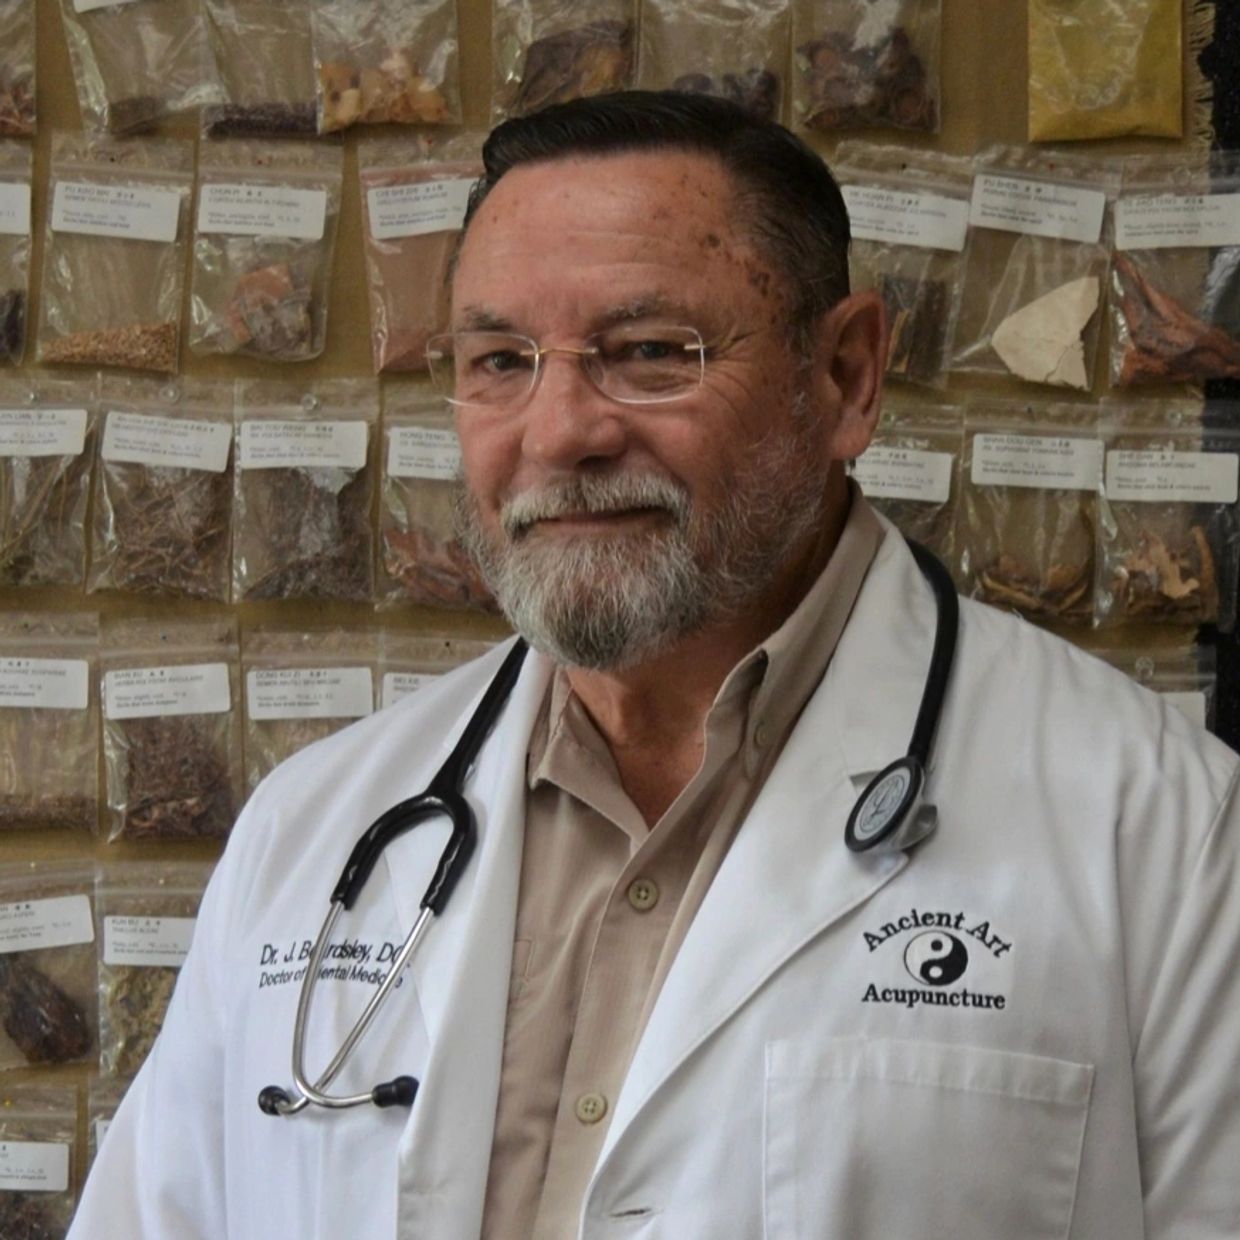 Acupuncturist Dr. Chip, Lakeland Florida